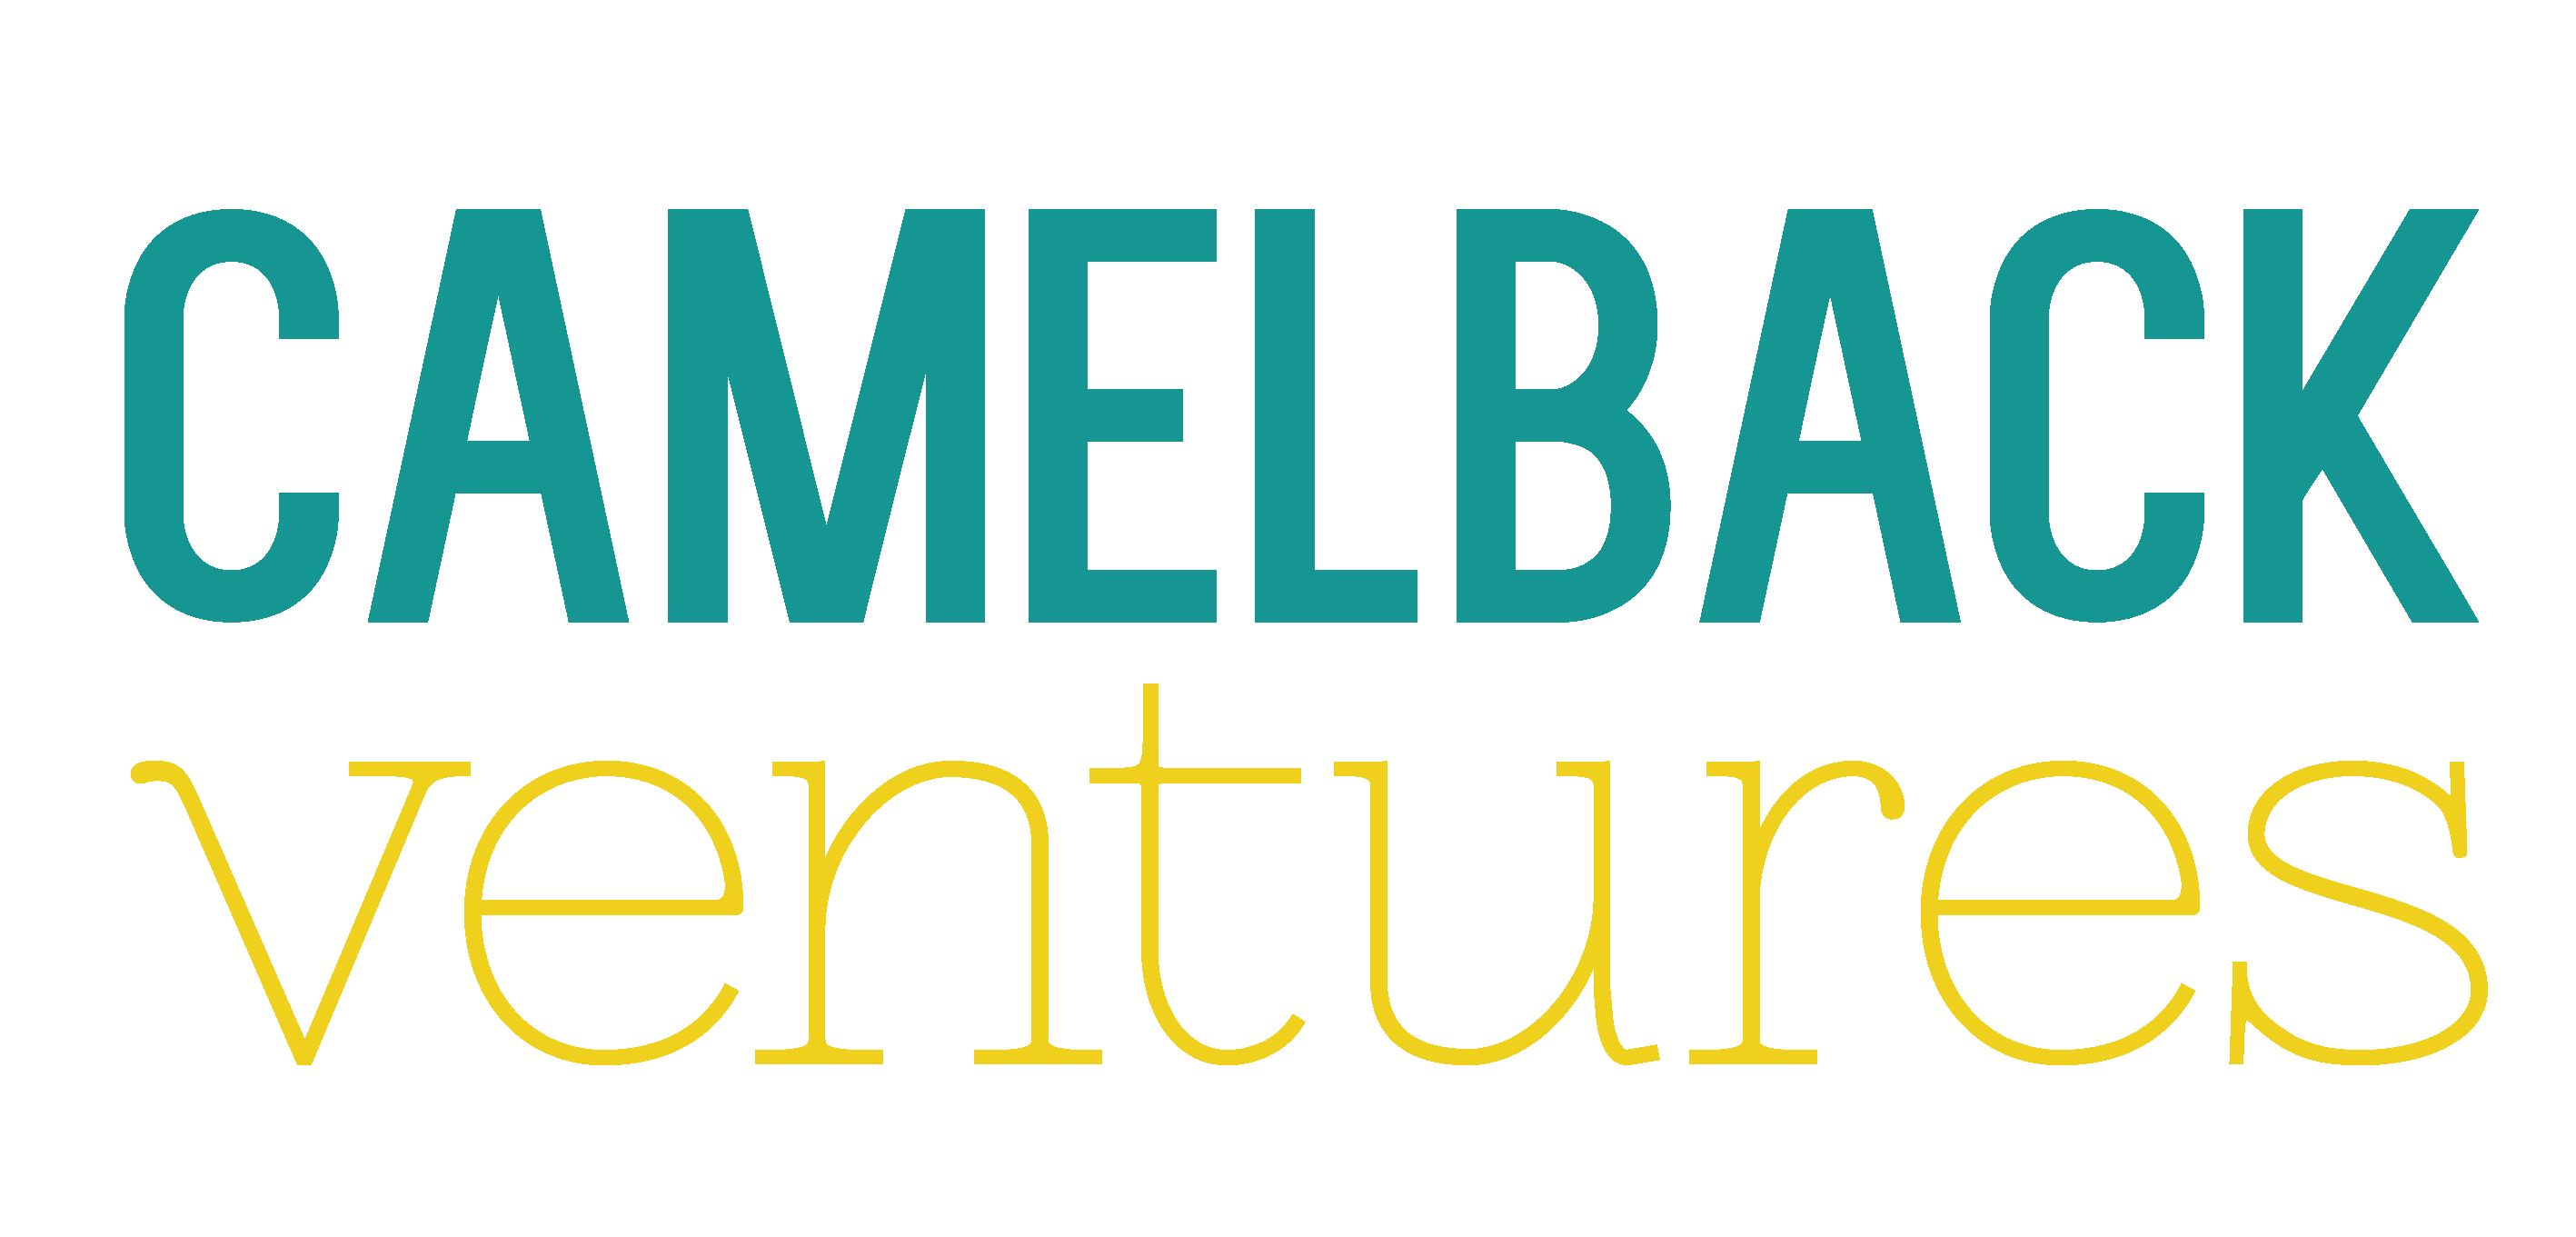 Camelback ventures logo